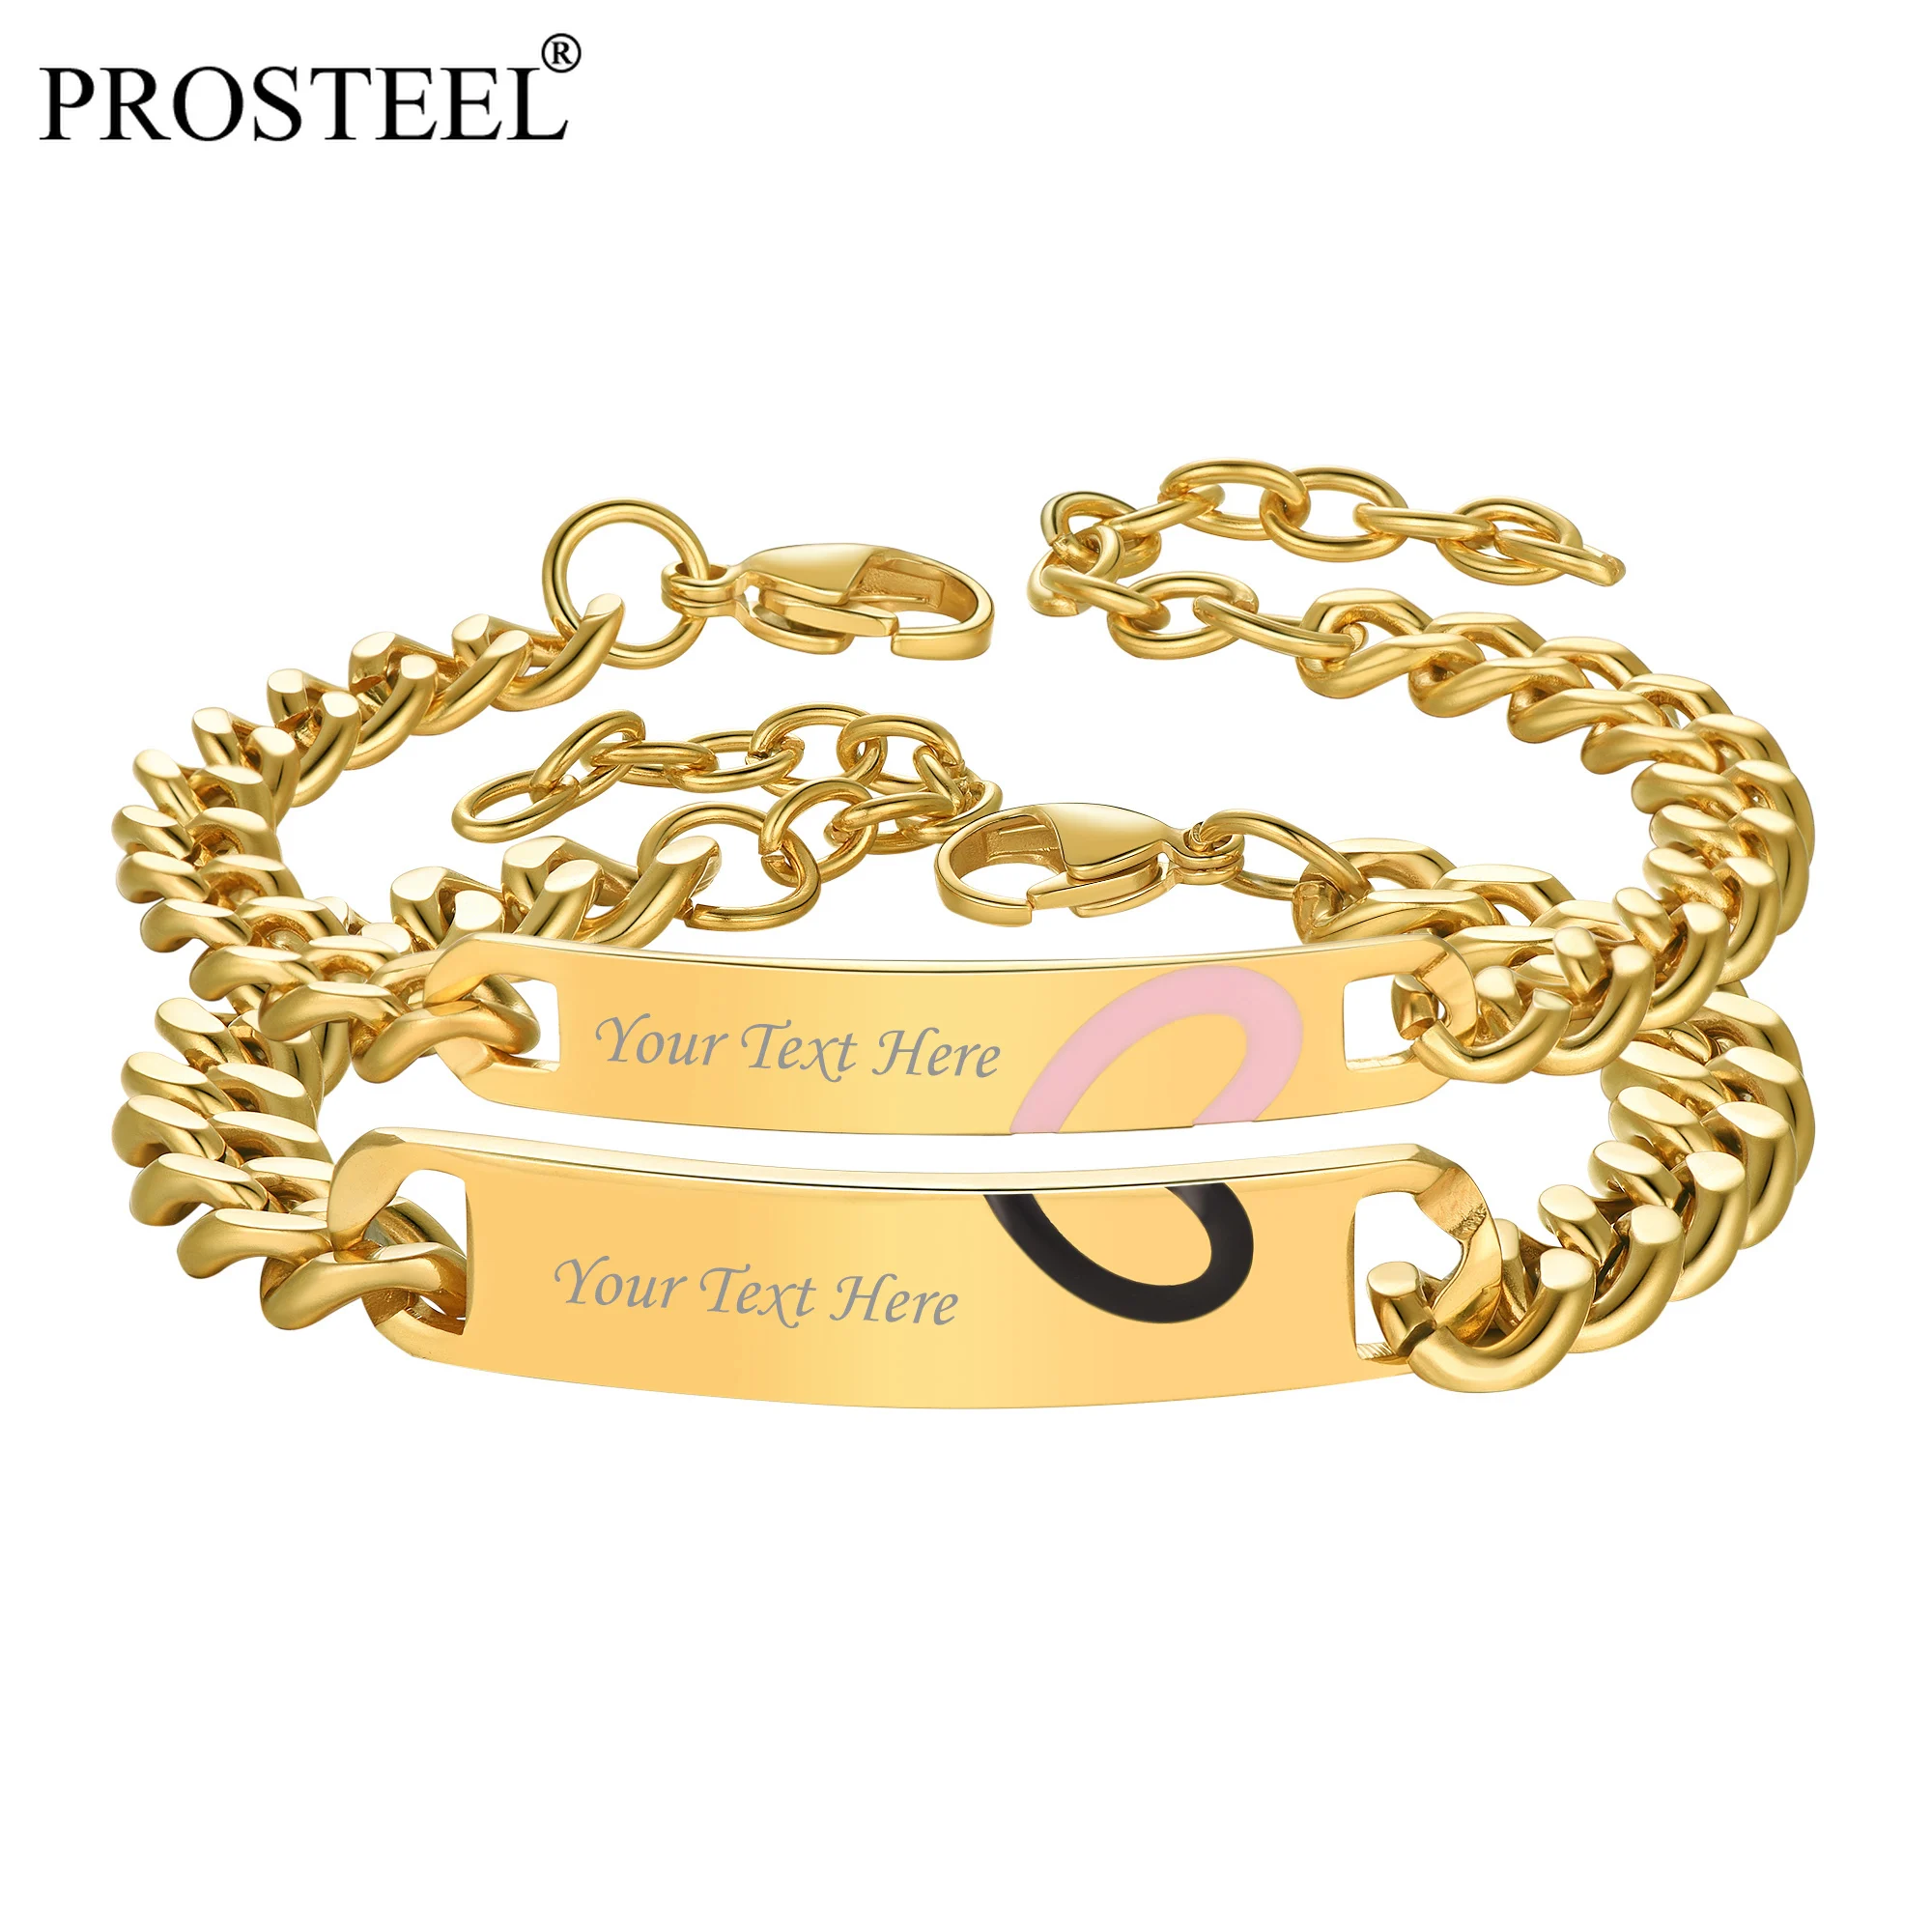 PROSTEEL-pulsera de acero inoxidable con nombre personalizado para hombre y mujer, brazalete con identificación, grabado gratis, color dorado/plateado